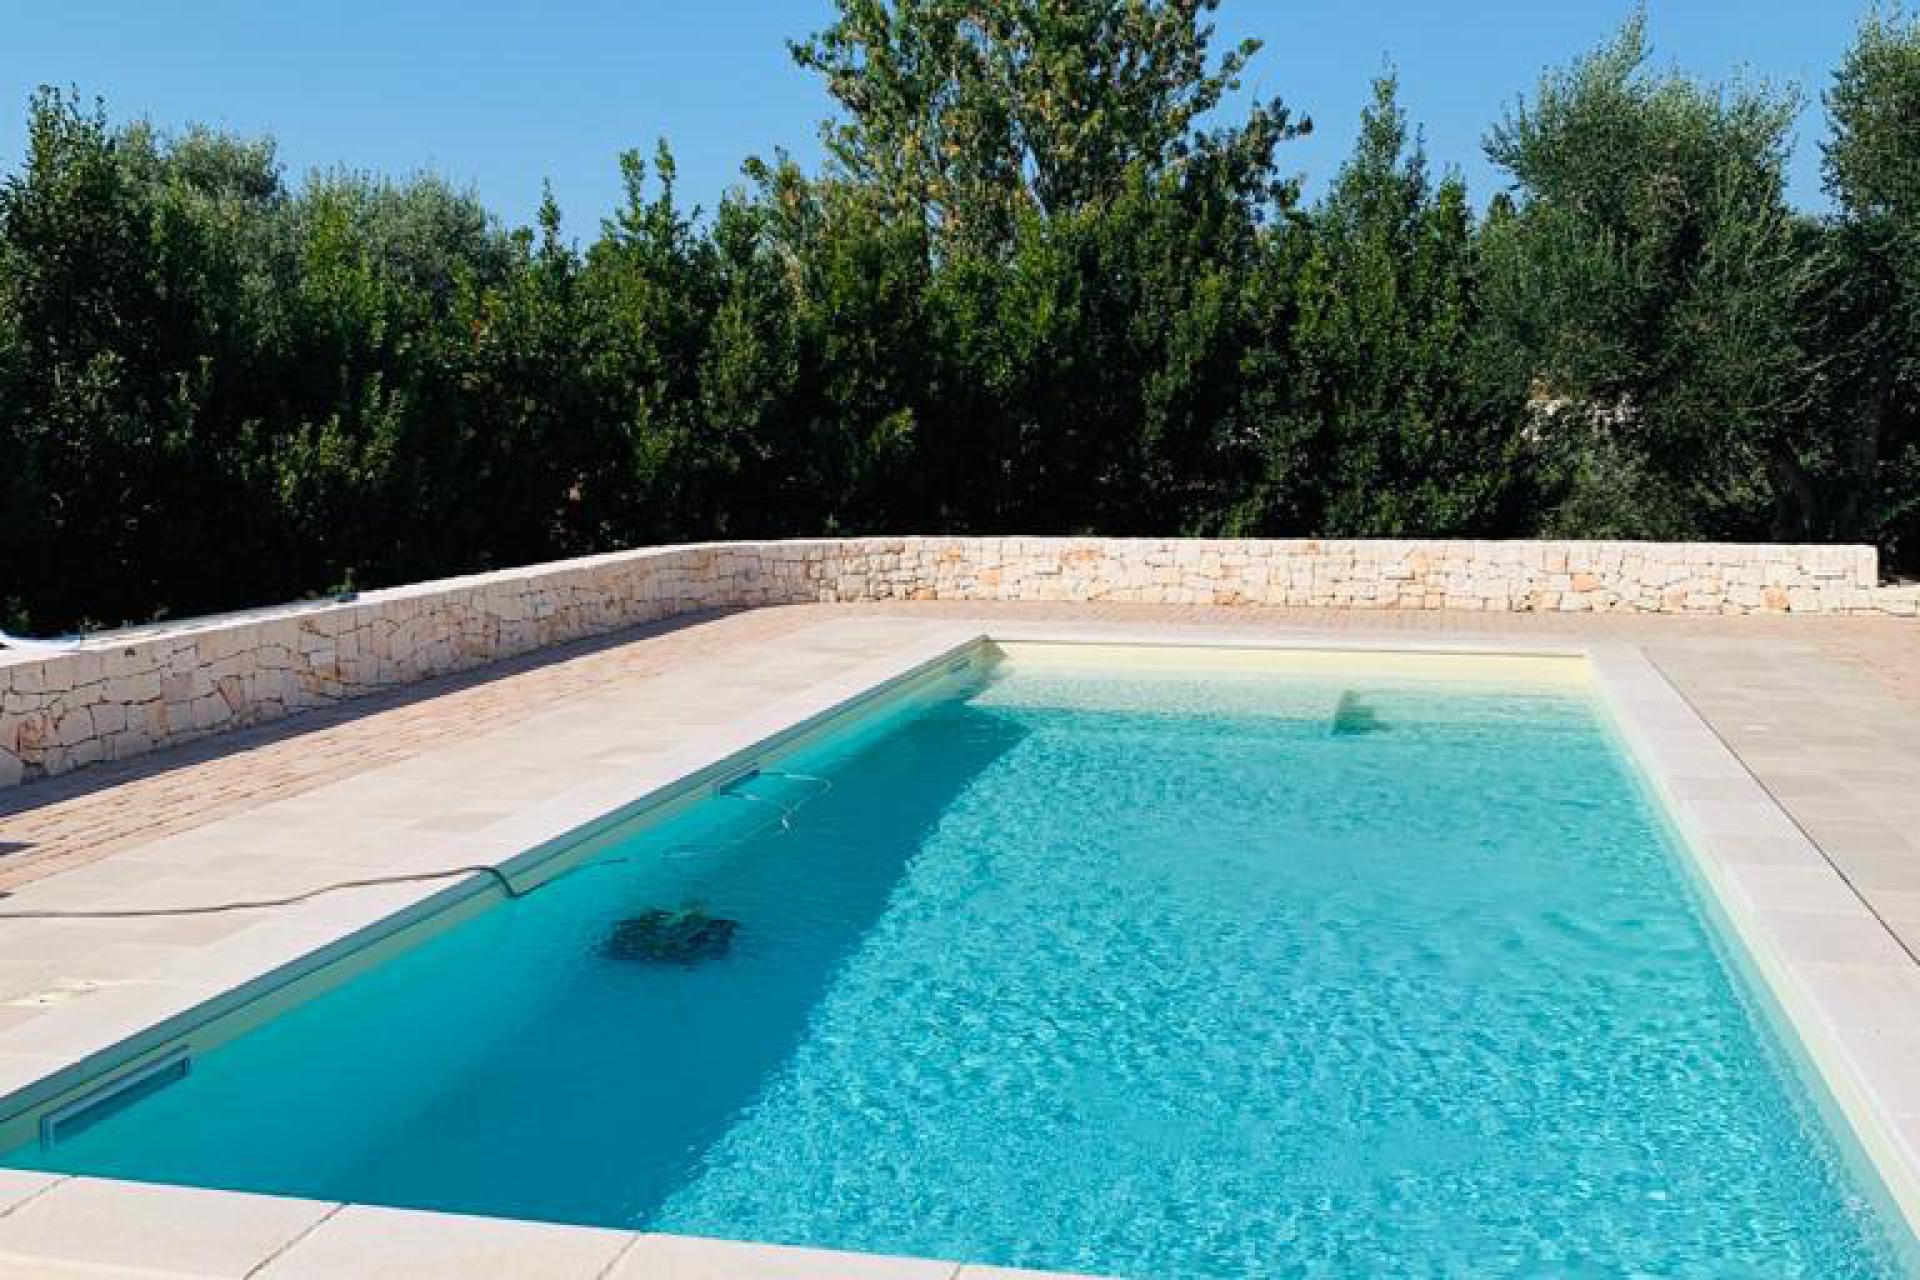 Trullo in Puglia with private pool